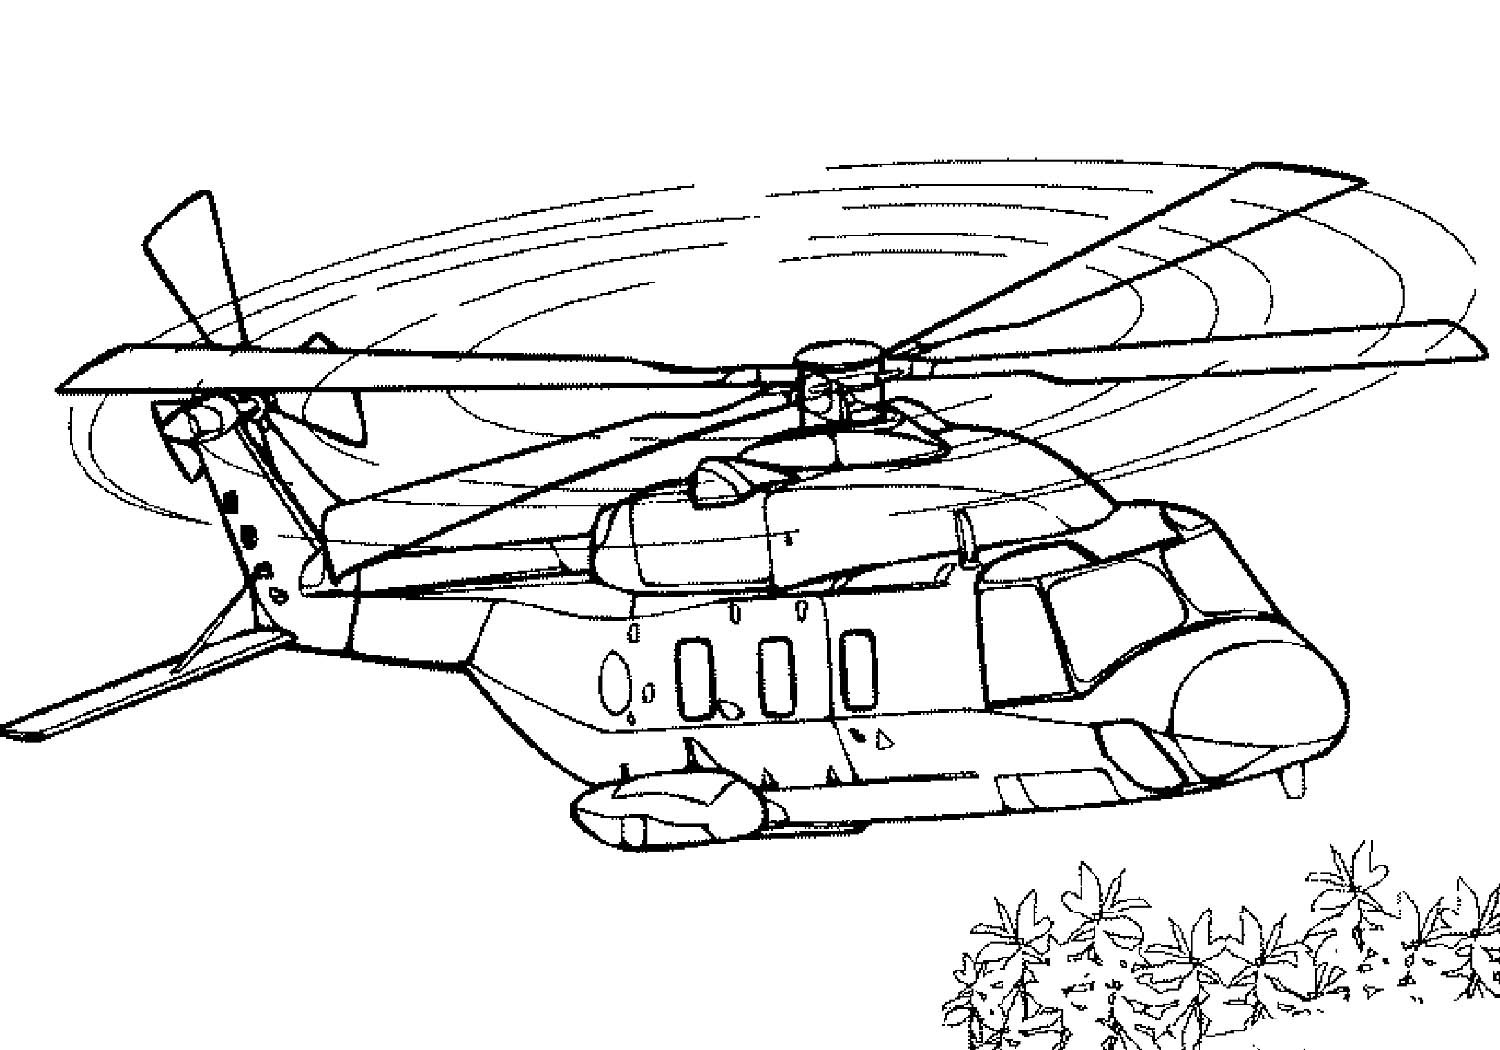 Раскраска. Военные вертолеты